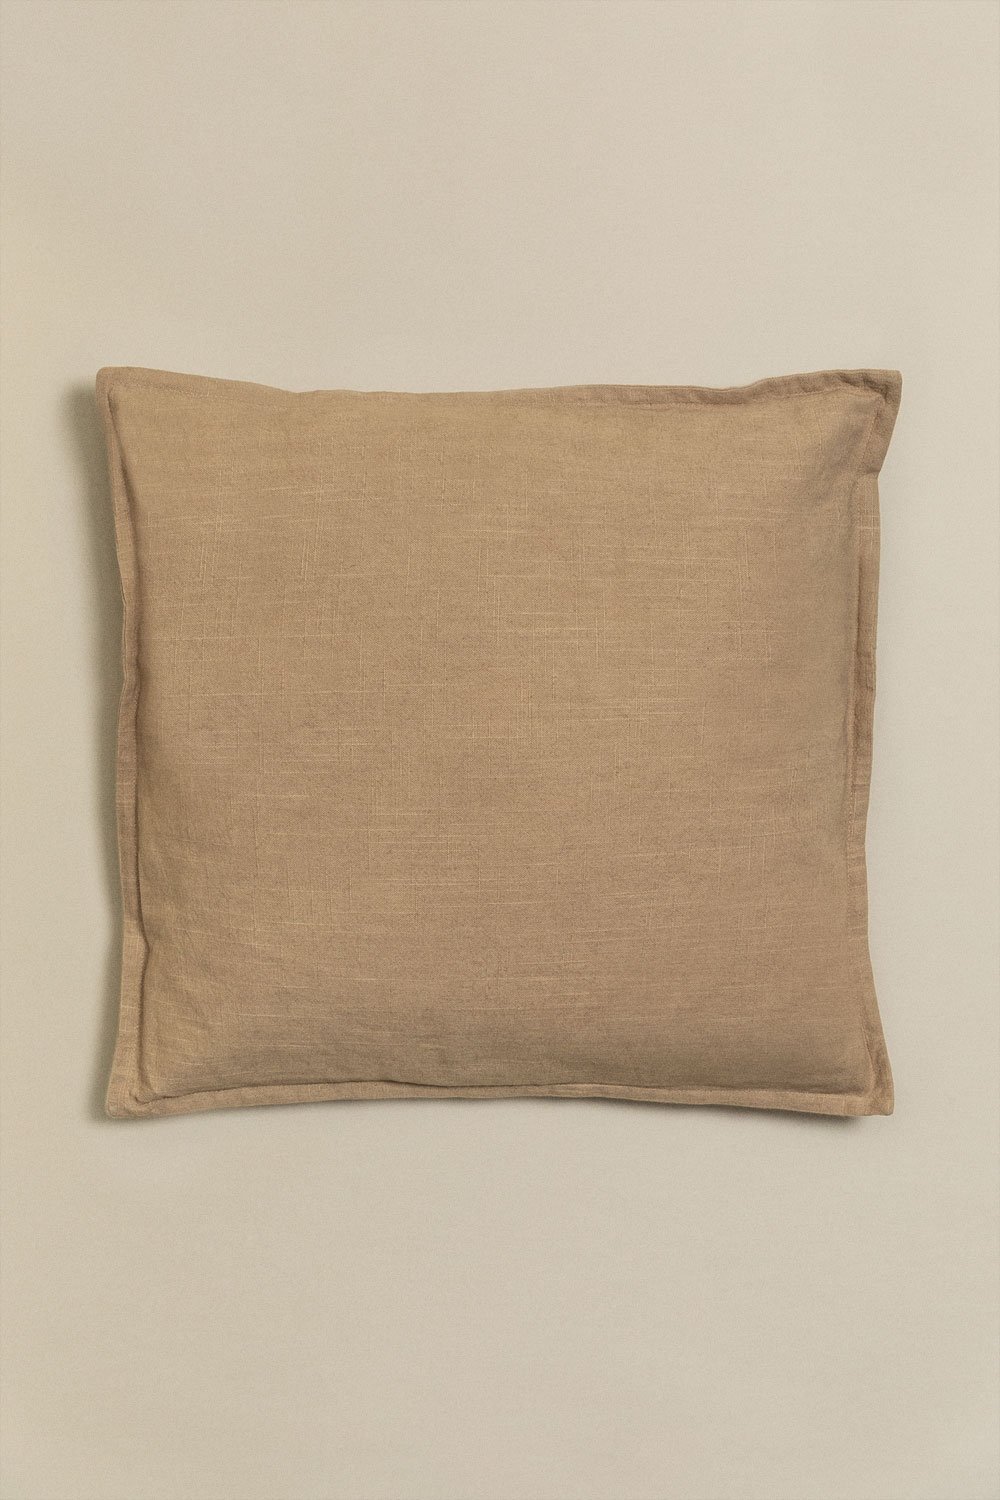 Kwadratowa poduszka bawełniana (45x45 cm) Elezar, obrazek w galerii 1